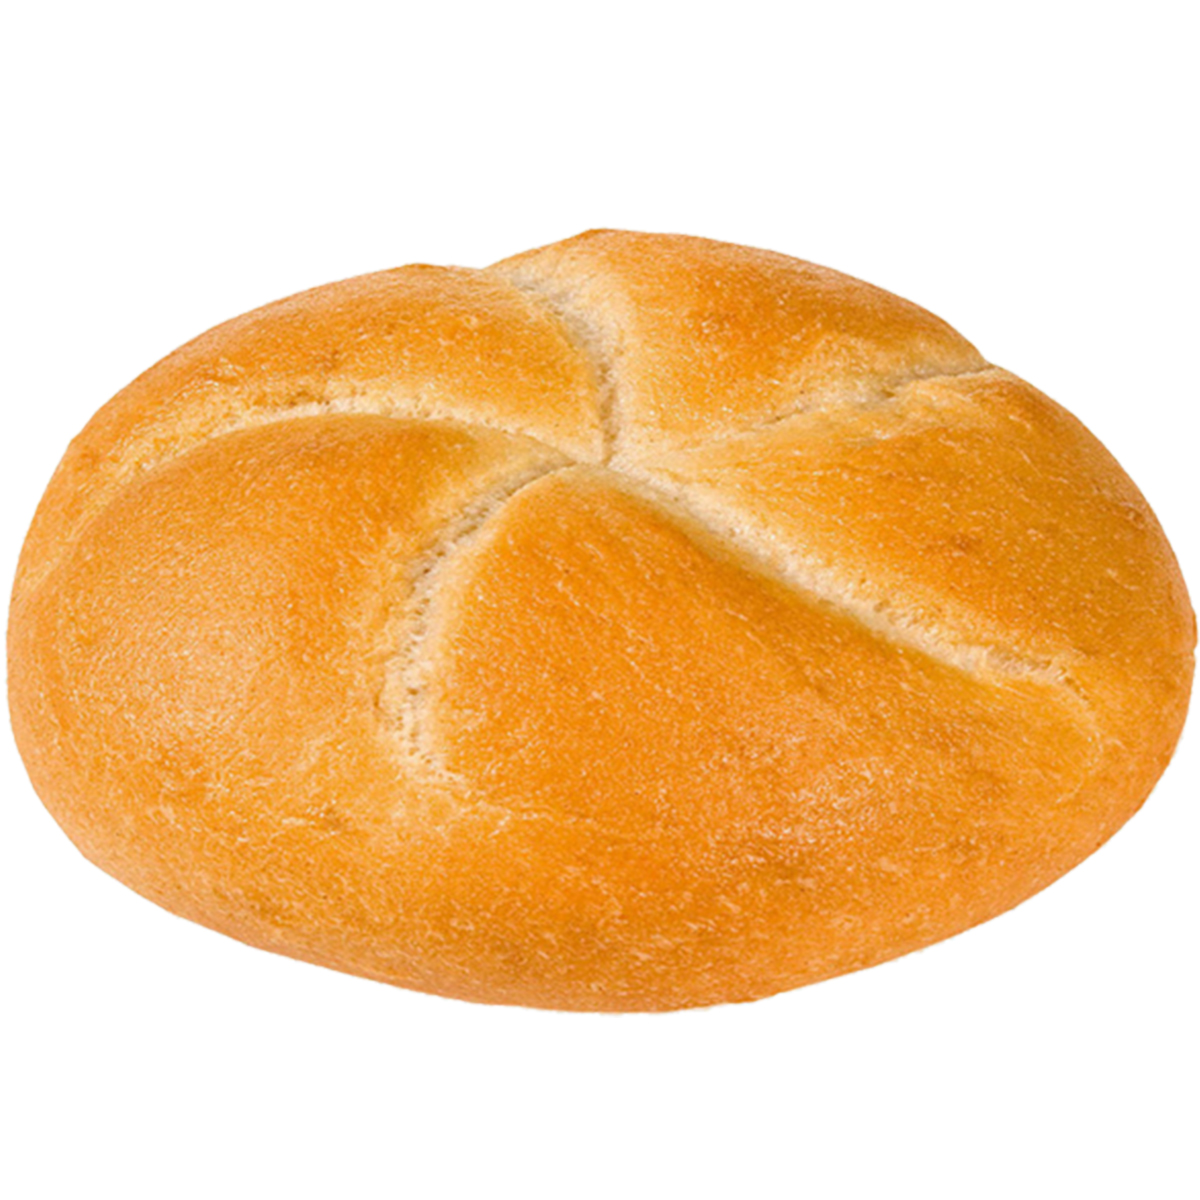 Pane dolce in sacchetto, 750g a prezzo conveniente in offerta